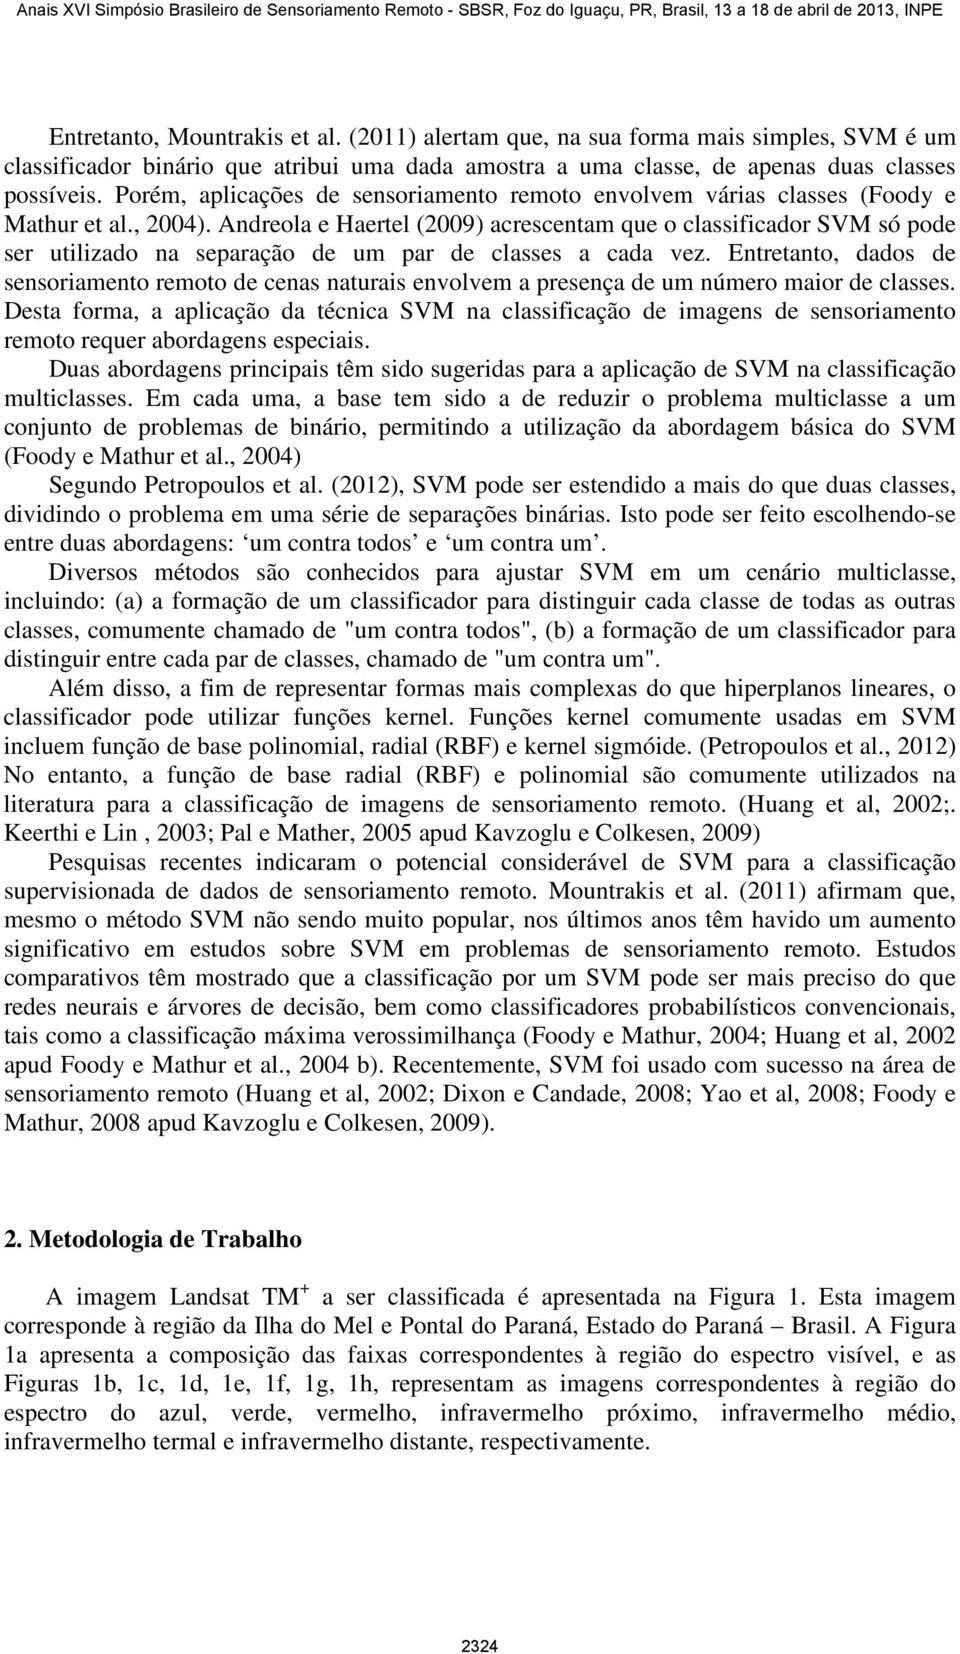 Andreola e Haertel (2009) acrescentam que o classificador SVM só pode ser utilizado na separação de um par de classes a cada vez.